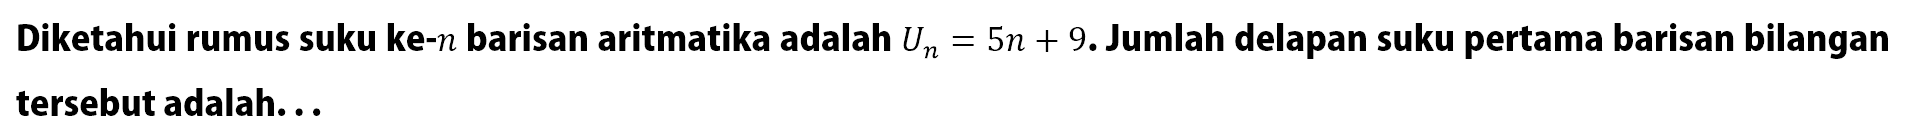 Diketahui rumus suku ke-n barisan aritmatika adalah Un = 5n + 9. Jumlah delapan suku pertama barisan bilangan tersebut adalah ...